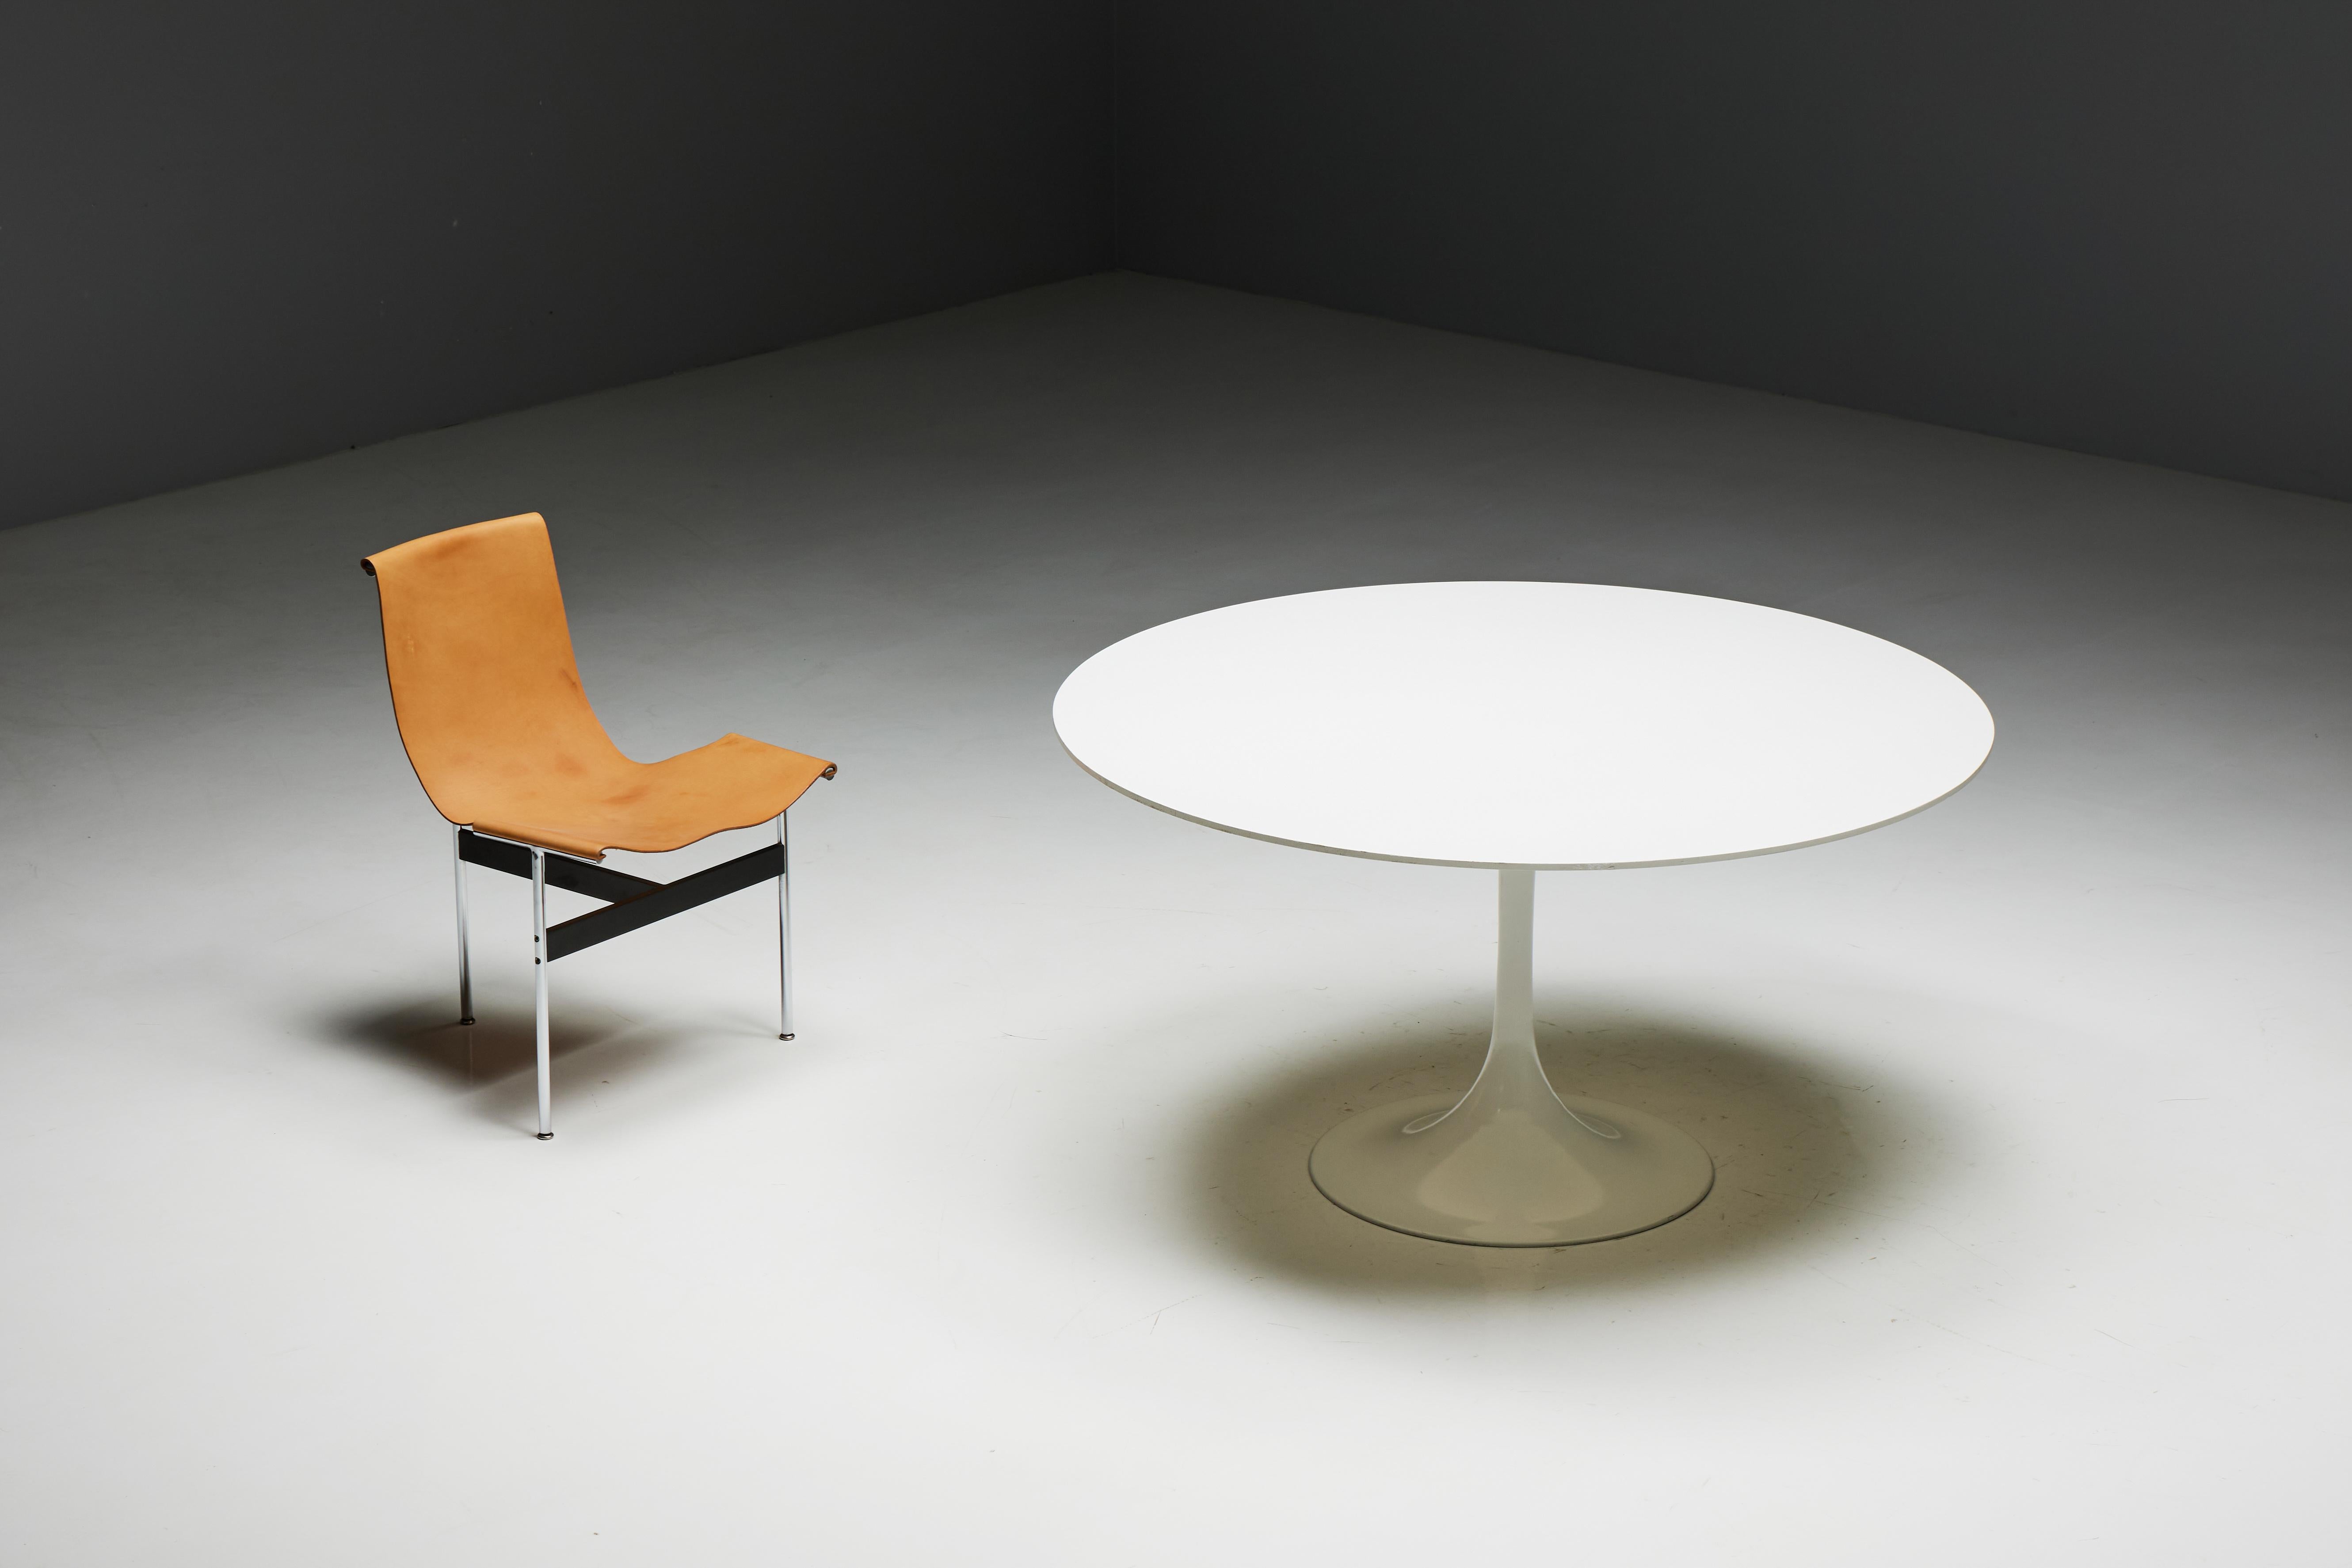 Table de salle à manger ronde d'Eero Saarinen pour Knoll International, originaire des États-Unis dans les années 1970. Cette table est dotée d'une élégante base tulipe en aluminium et d'un élégant plateau en stratifié d'un blanc immaculé. Le design